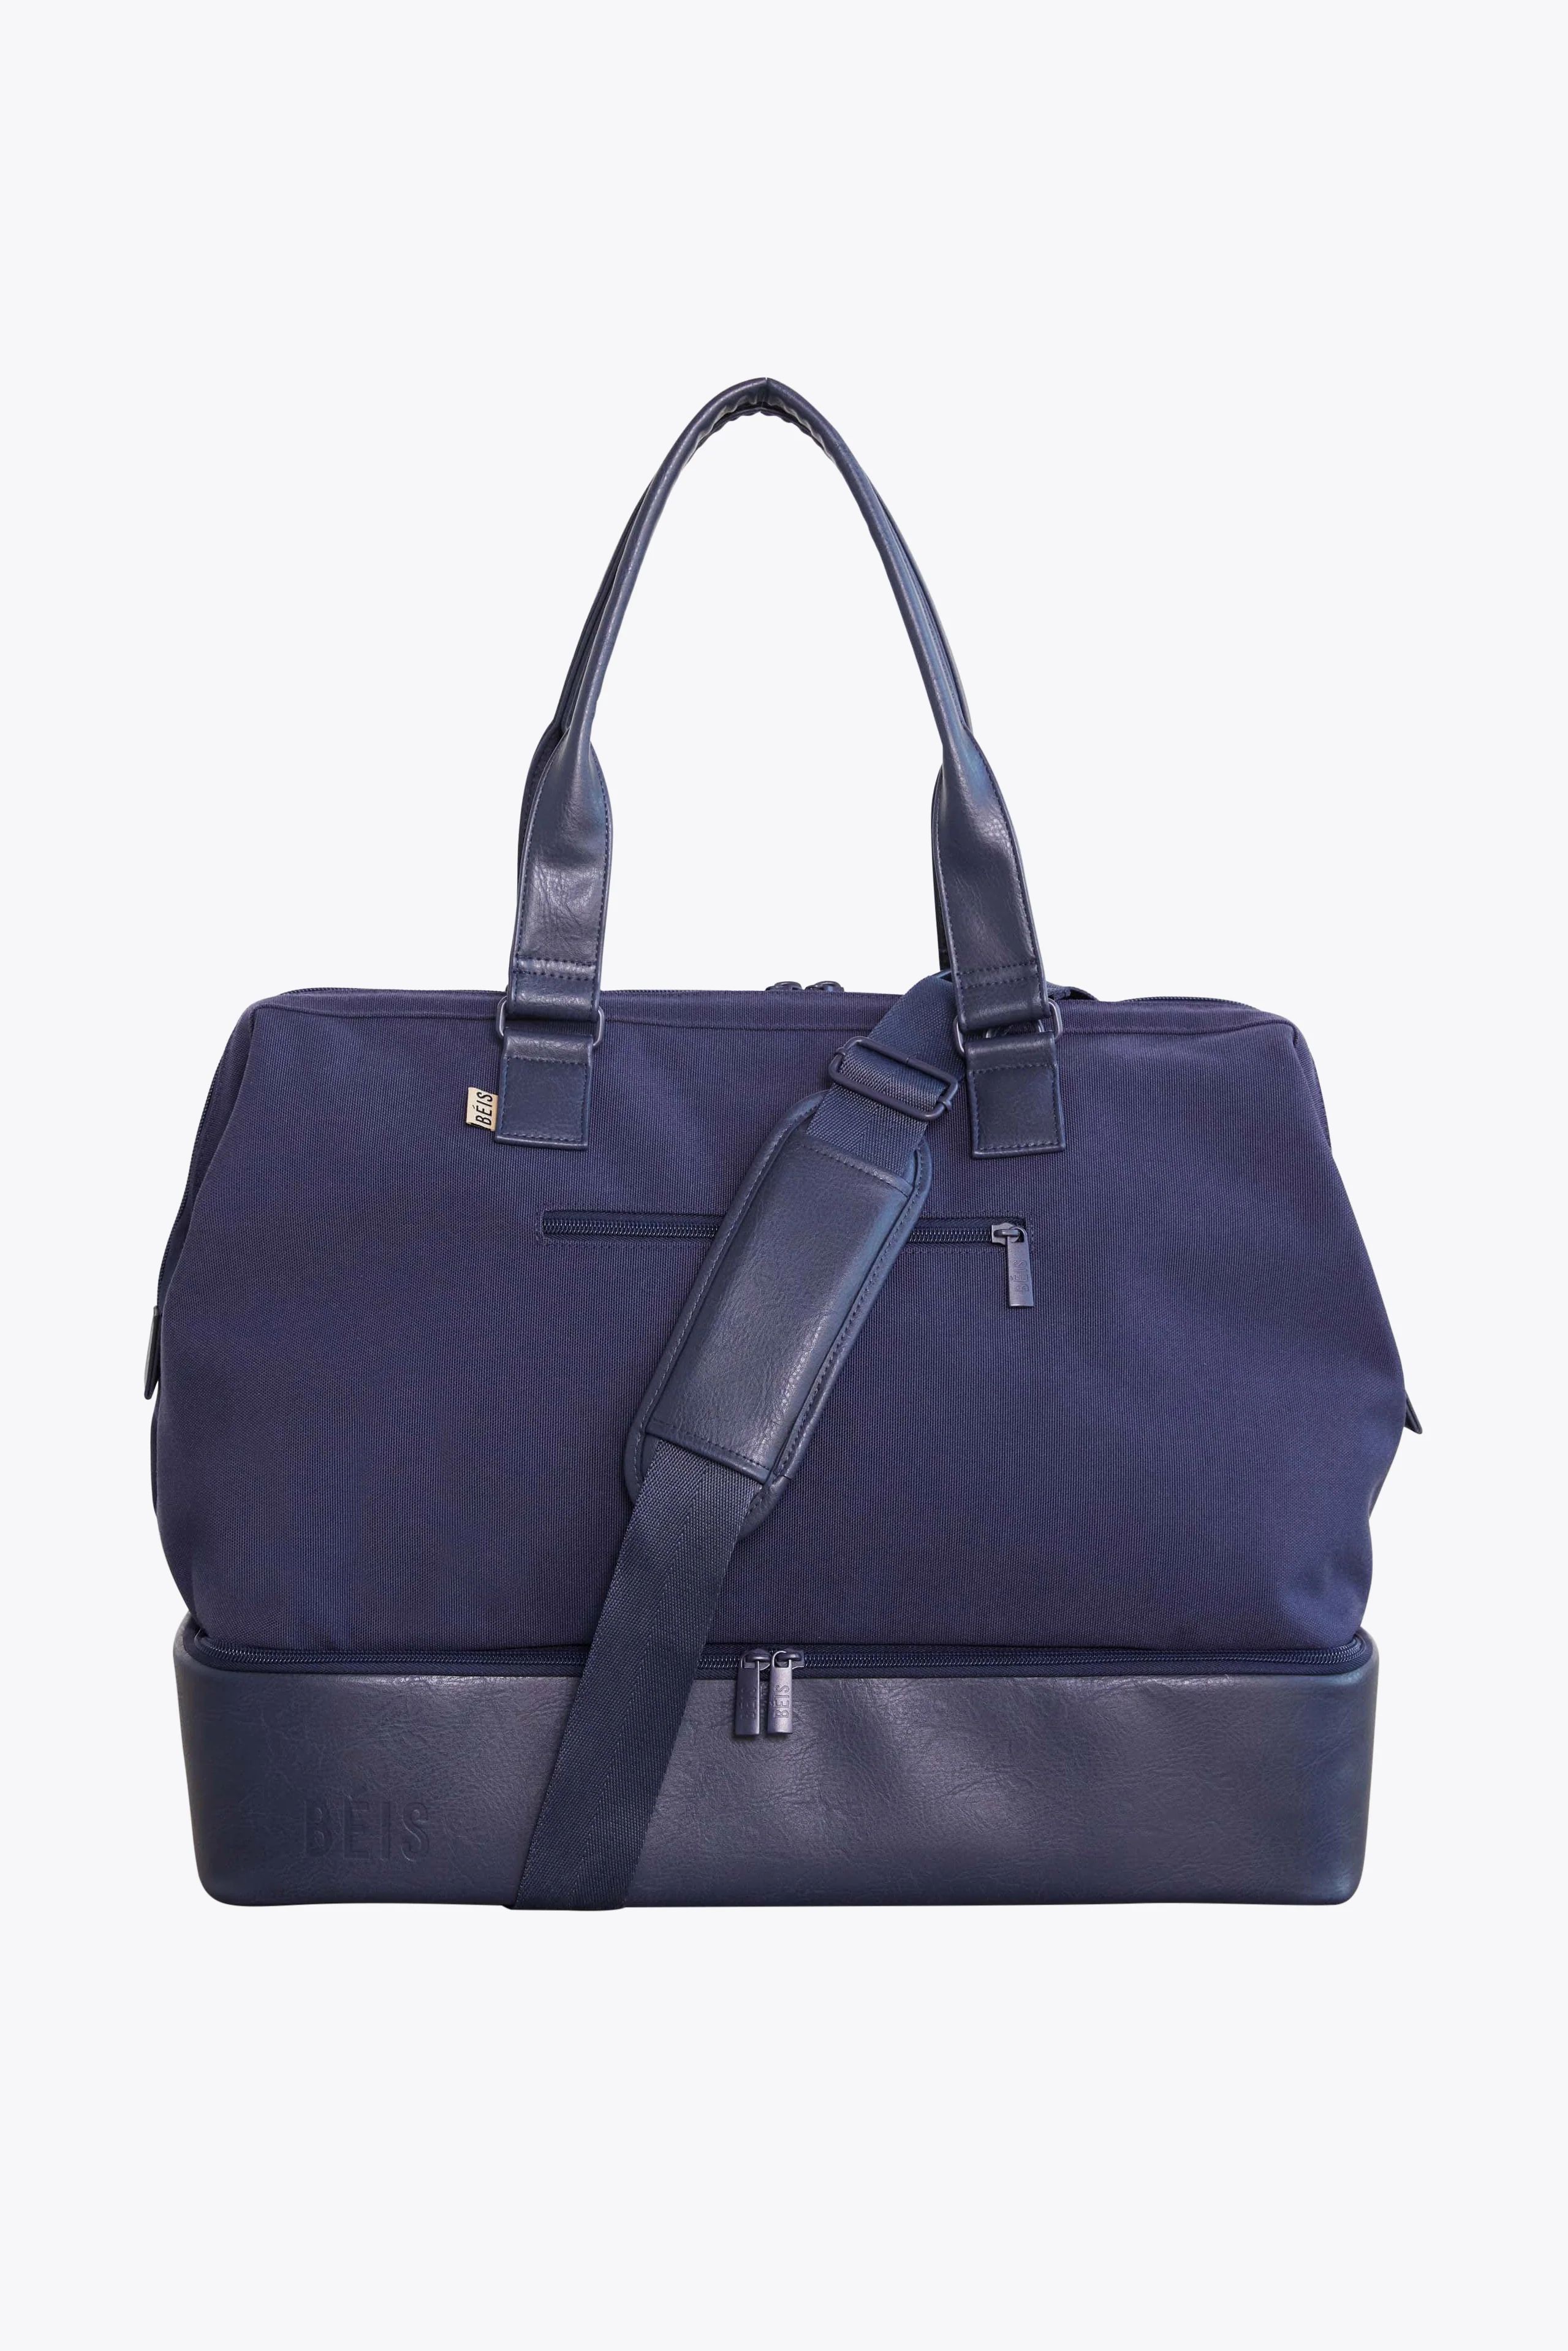 BÉIS 'The Weekender' in Navy - Small Blue Weekender Bag & Travel Duffle Bag | BÉIS Travel